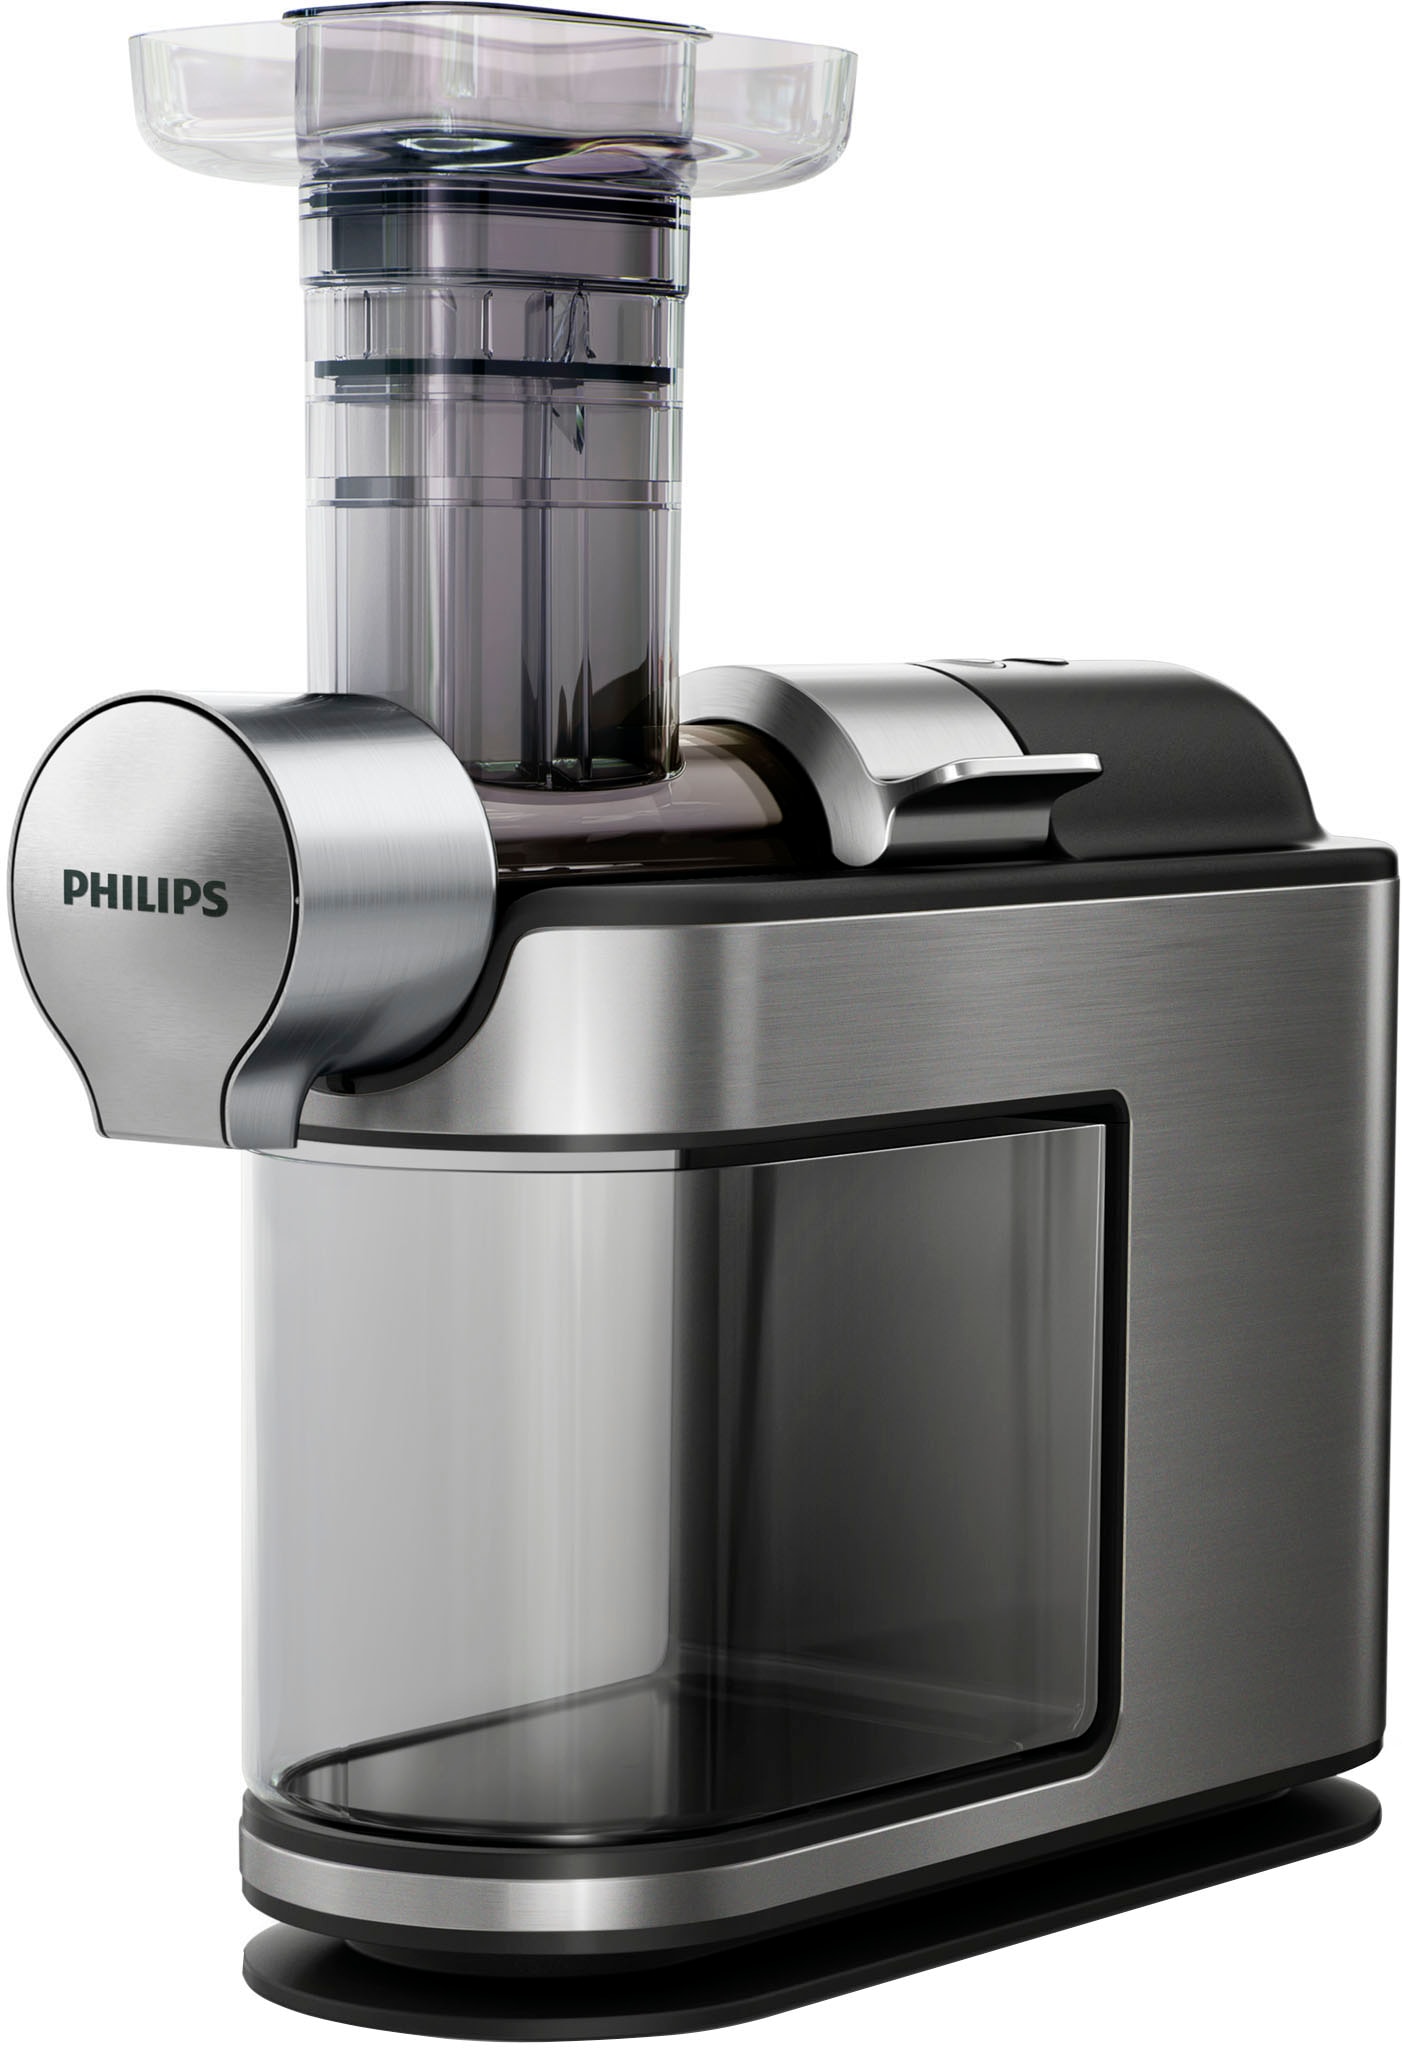 und Mahlwerk Kaffeemaschine bei mit Philips online mit All-in-1 Papierfilter, »HD7888/01 1x4, Smart Kaffeebohnenbehälter Dosierung Brew«,